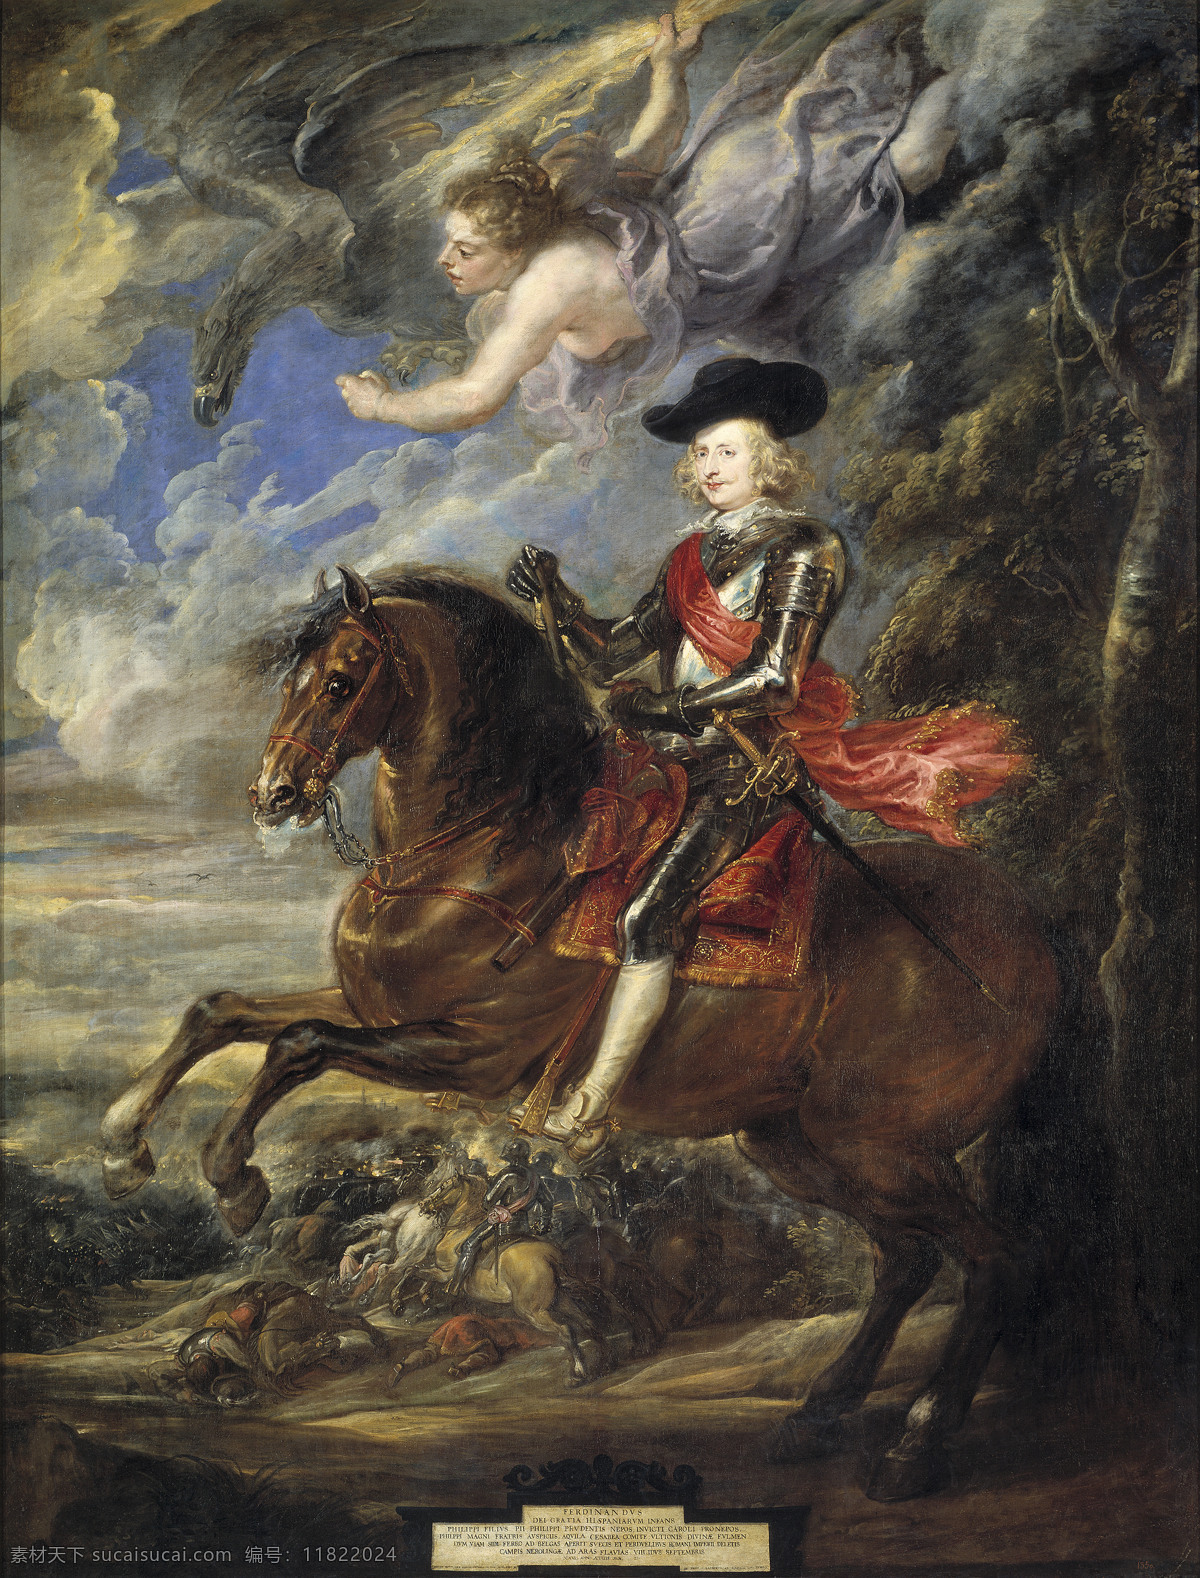 德国 画家 彼得 nordlingen of battle the at austria de fernando cardinalinfante paul peter rubens